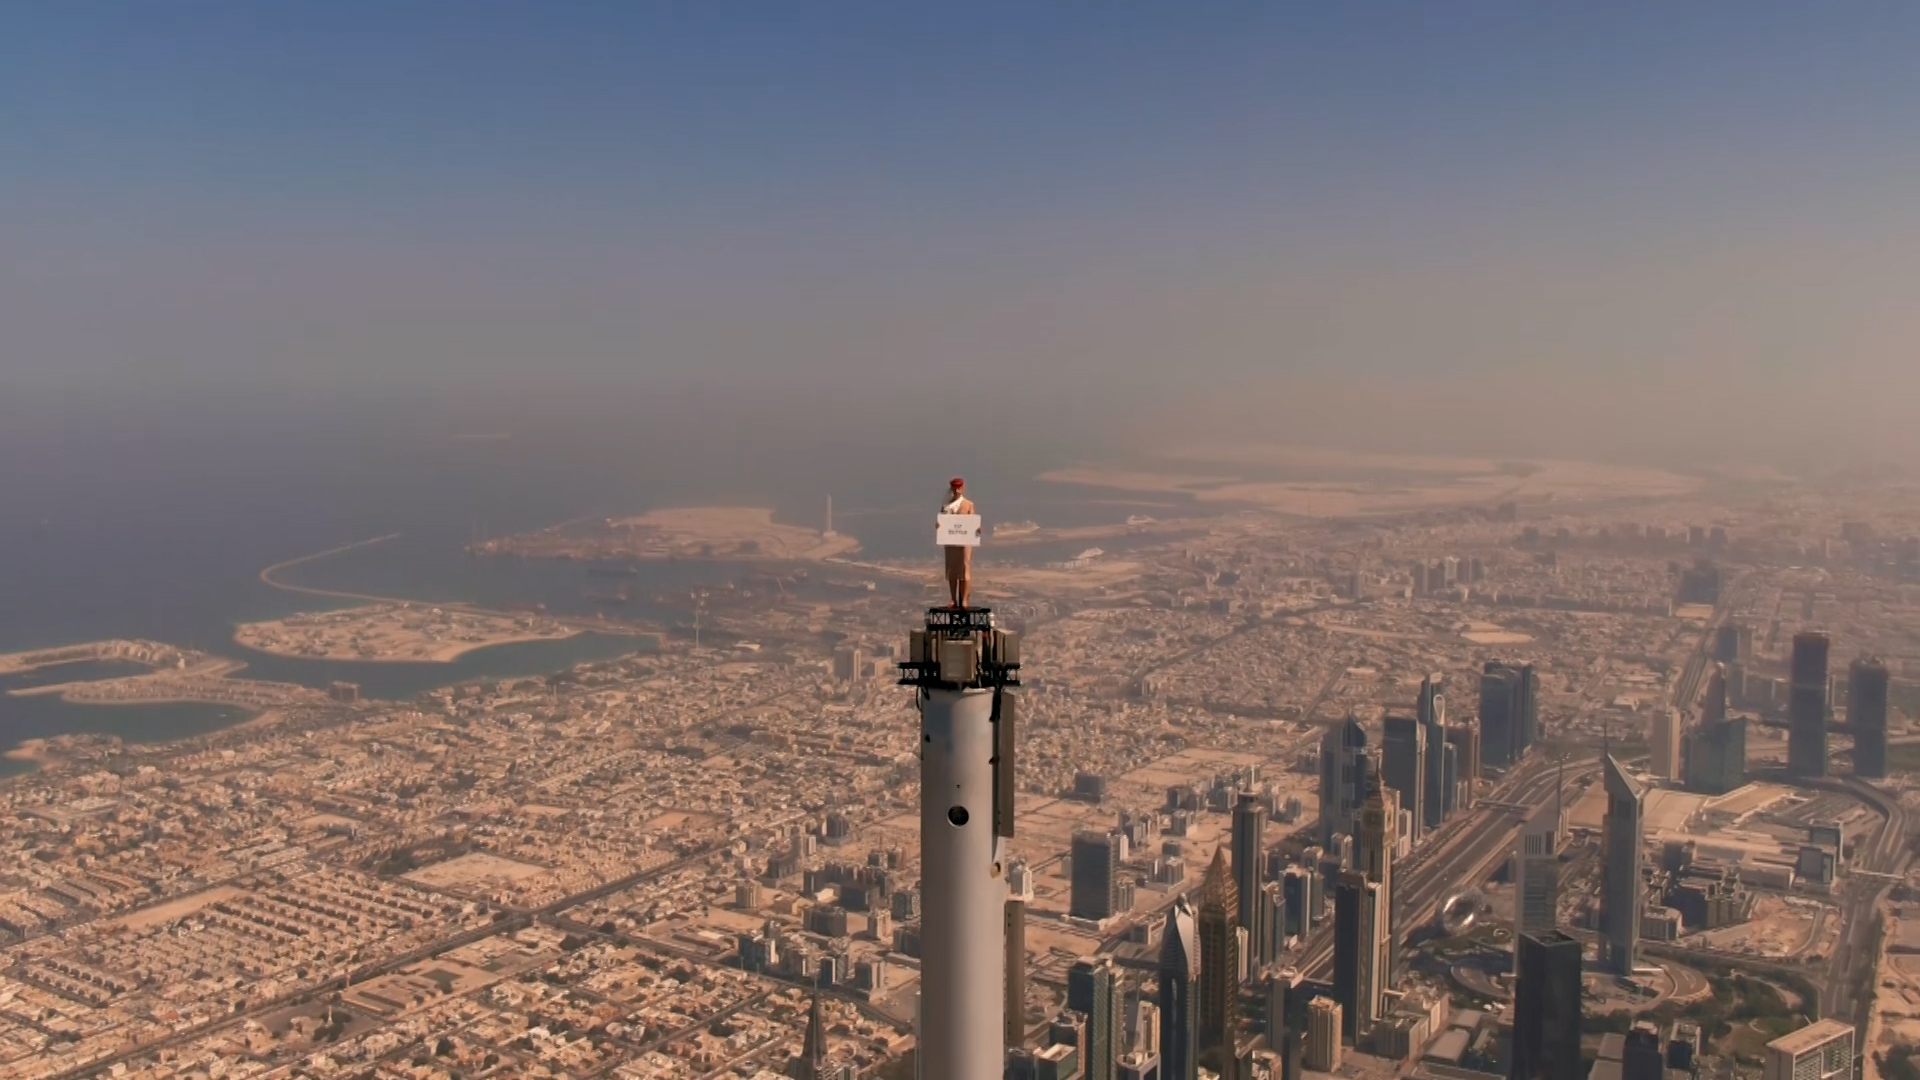 Cześć mamo, jestem na szczycie świata! - Linie lotnicze Emirates nakręciły reklamę na iglicy najwyższego budynku świata bez użycia grafiki komputerowej